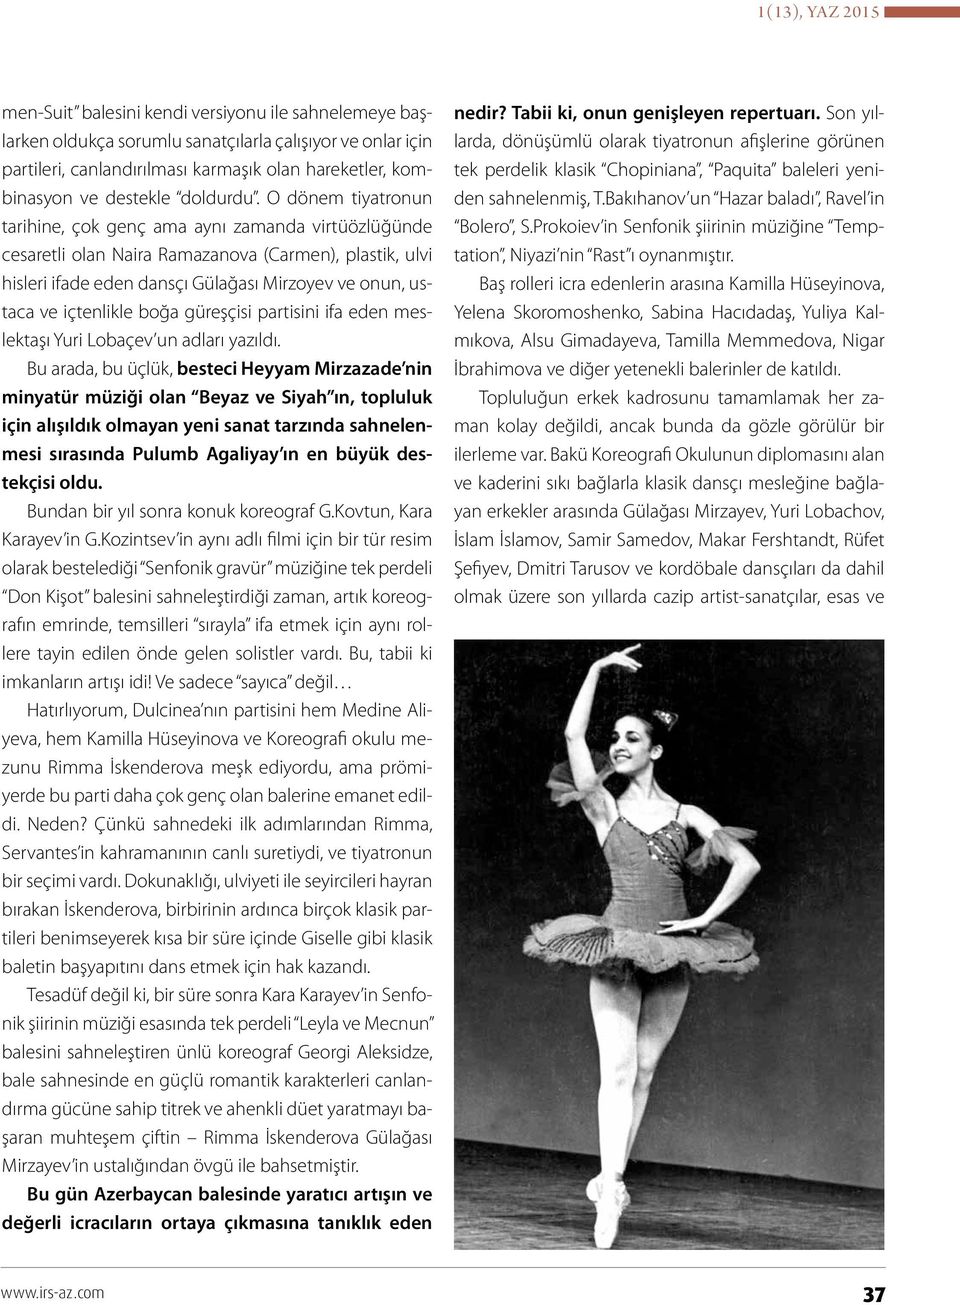 O dönem tiyatronun tarihine, çok genç ama aynı zamanda virtüözlüğünde cesaretli olan Naira Ramazanova (Carmen), plastik, ulvi hisleri ifade eden dansçı Gülağası Mirzoyev ve onun, ustaca ve içtenlikle